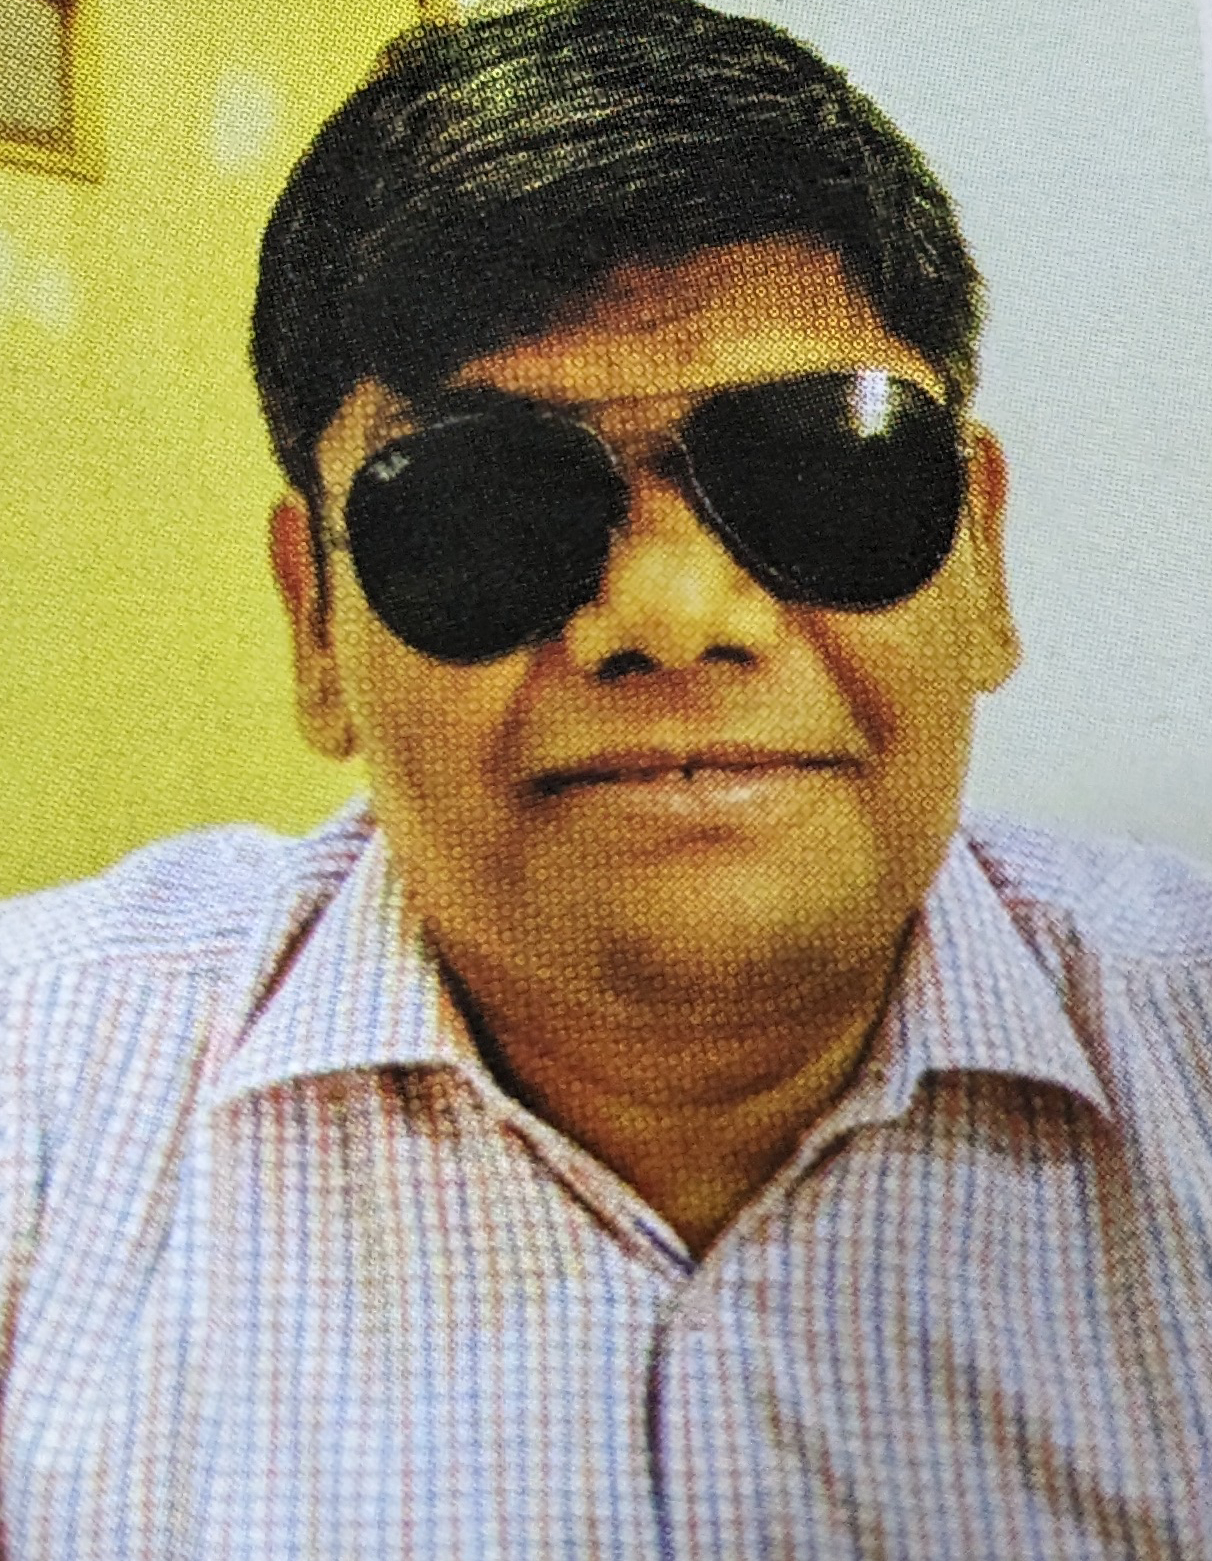 Dr Varadarajan